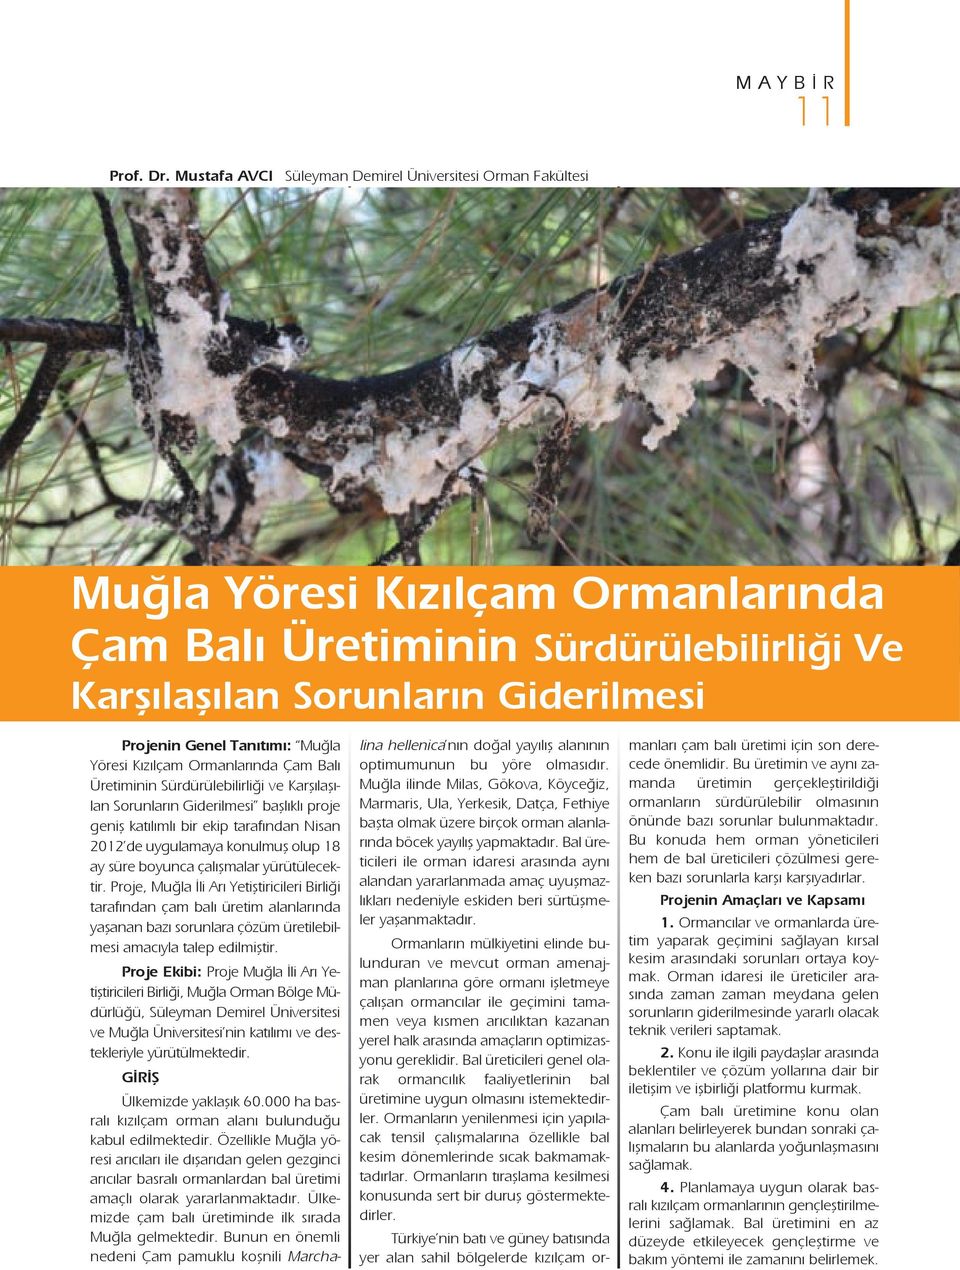 Muğla Yöresi Kızılçam Ormanlarında Çam Balı Üretiminin Sürdürülebilirliği ve Karşılaşılan Sorunların Giderilmesi başlıklı proje geniş katılımlı bir ekip tarafından Nisan 2012 de uygulamaya konulmuş